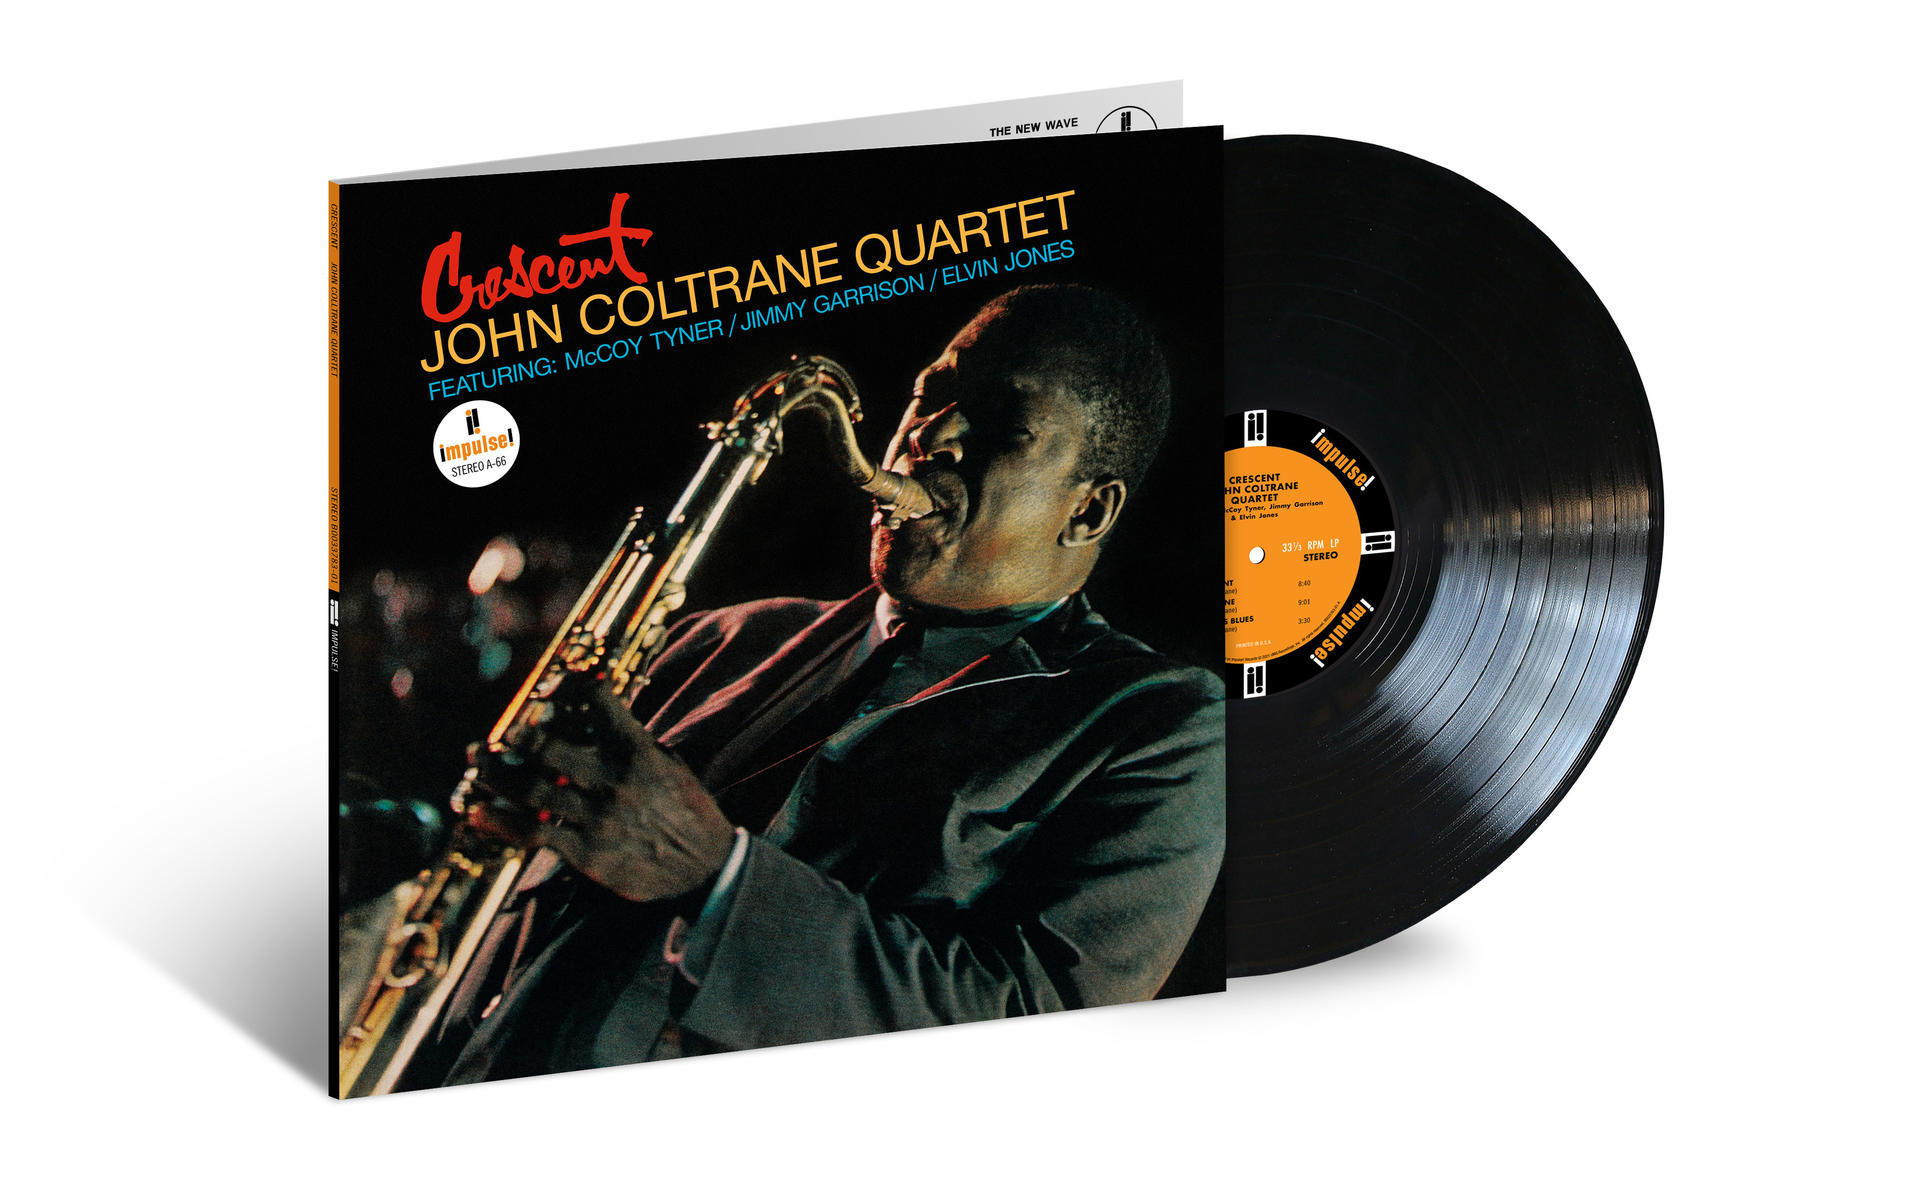 John Crescent Quartet - - (Vinyl) Coltrane